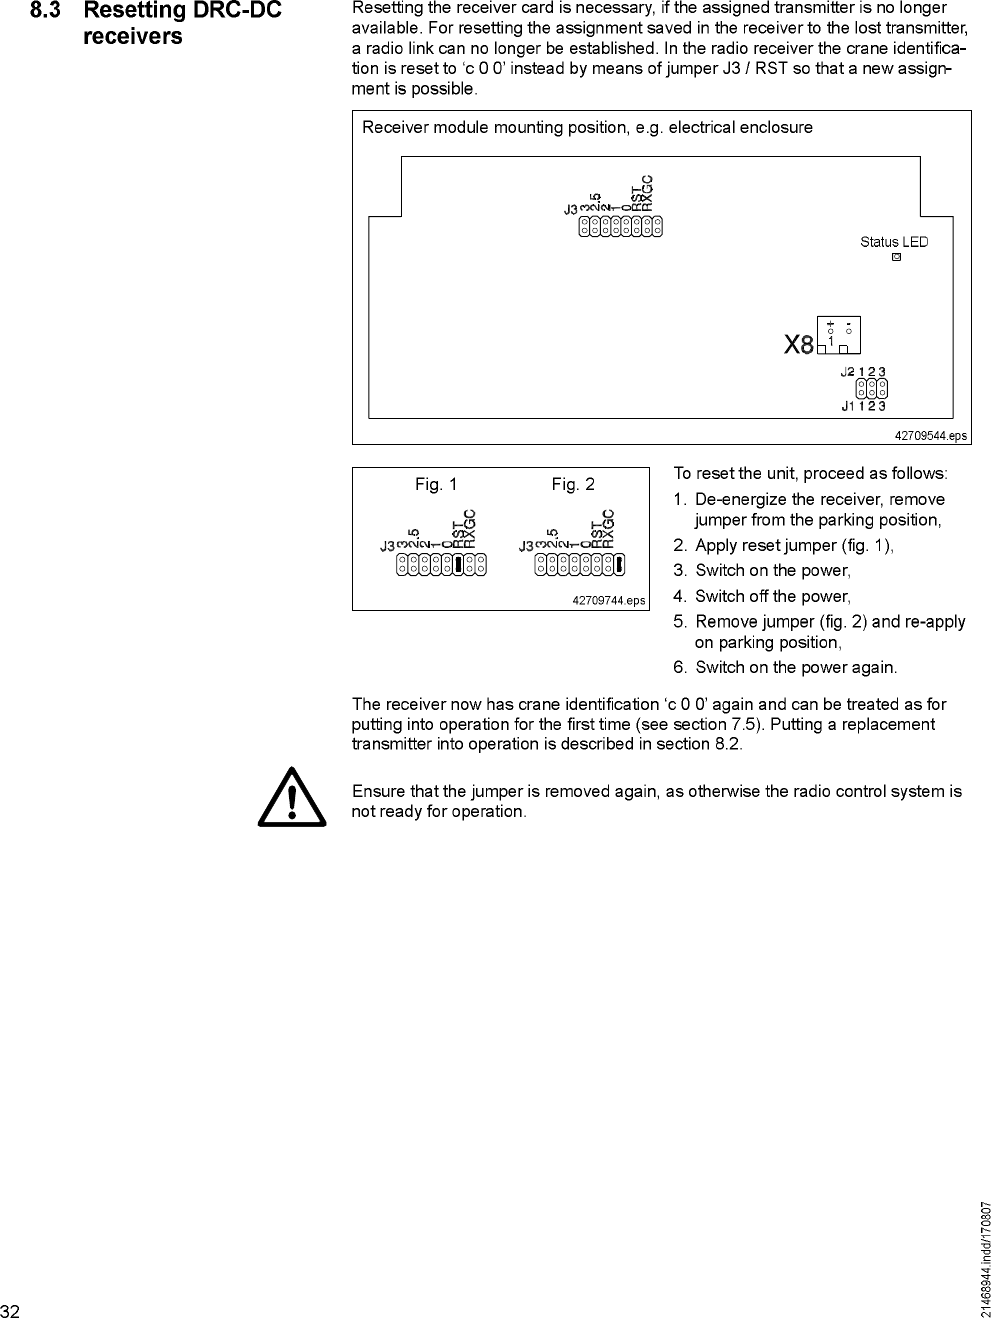 Scanreco Dc6tr03fh917 Remote Control User Manual